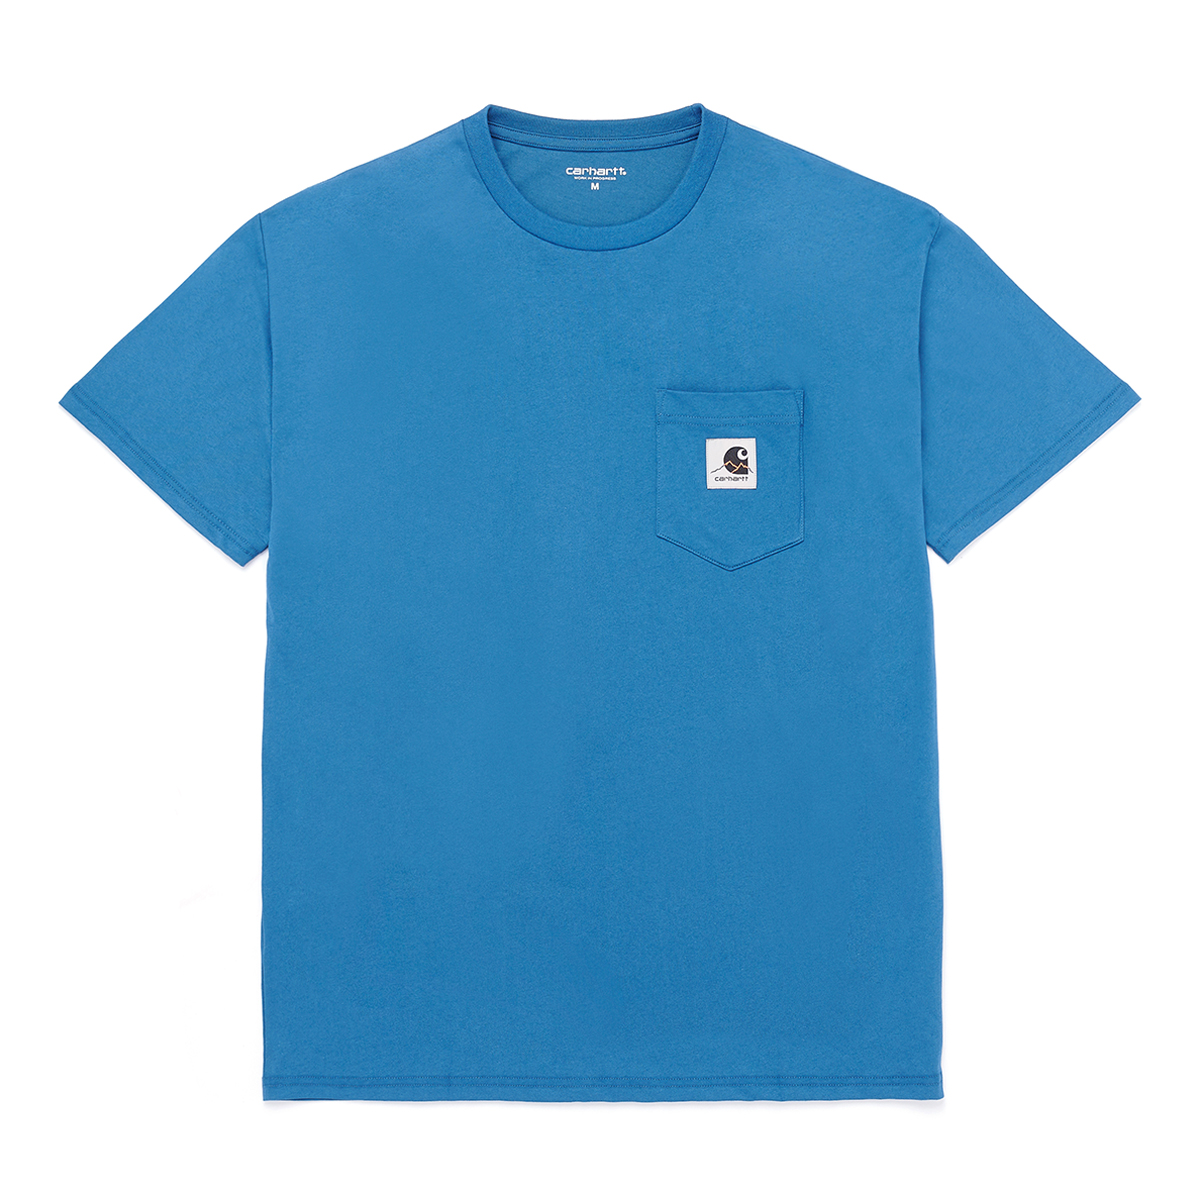 S/S Outdoor C Label T-Shirt